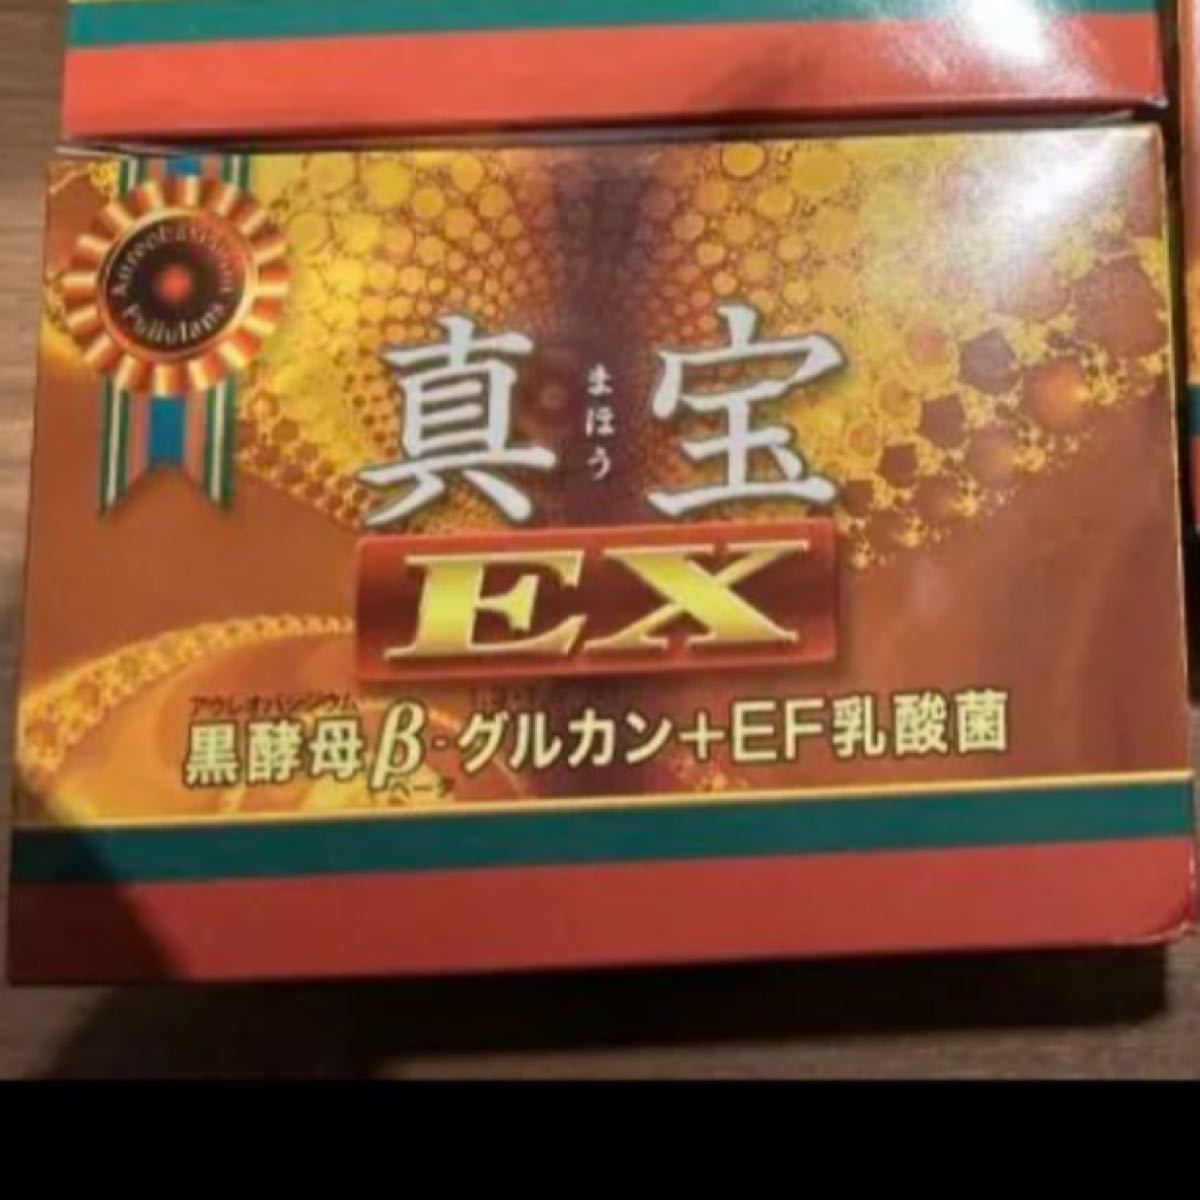 ❤みラッピング無料❤ 真宝EX4箱 黒酵母β-グルカン＋EF乳酸菌 www.m